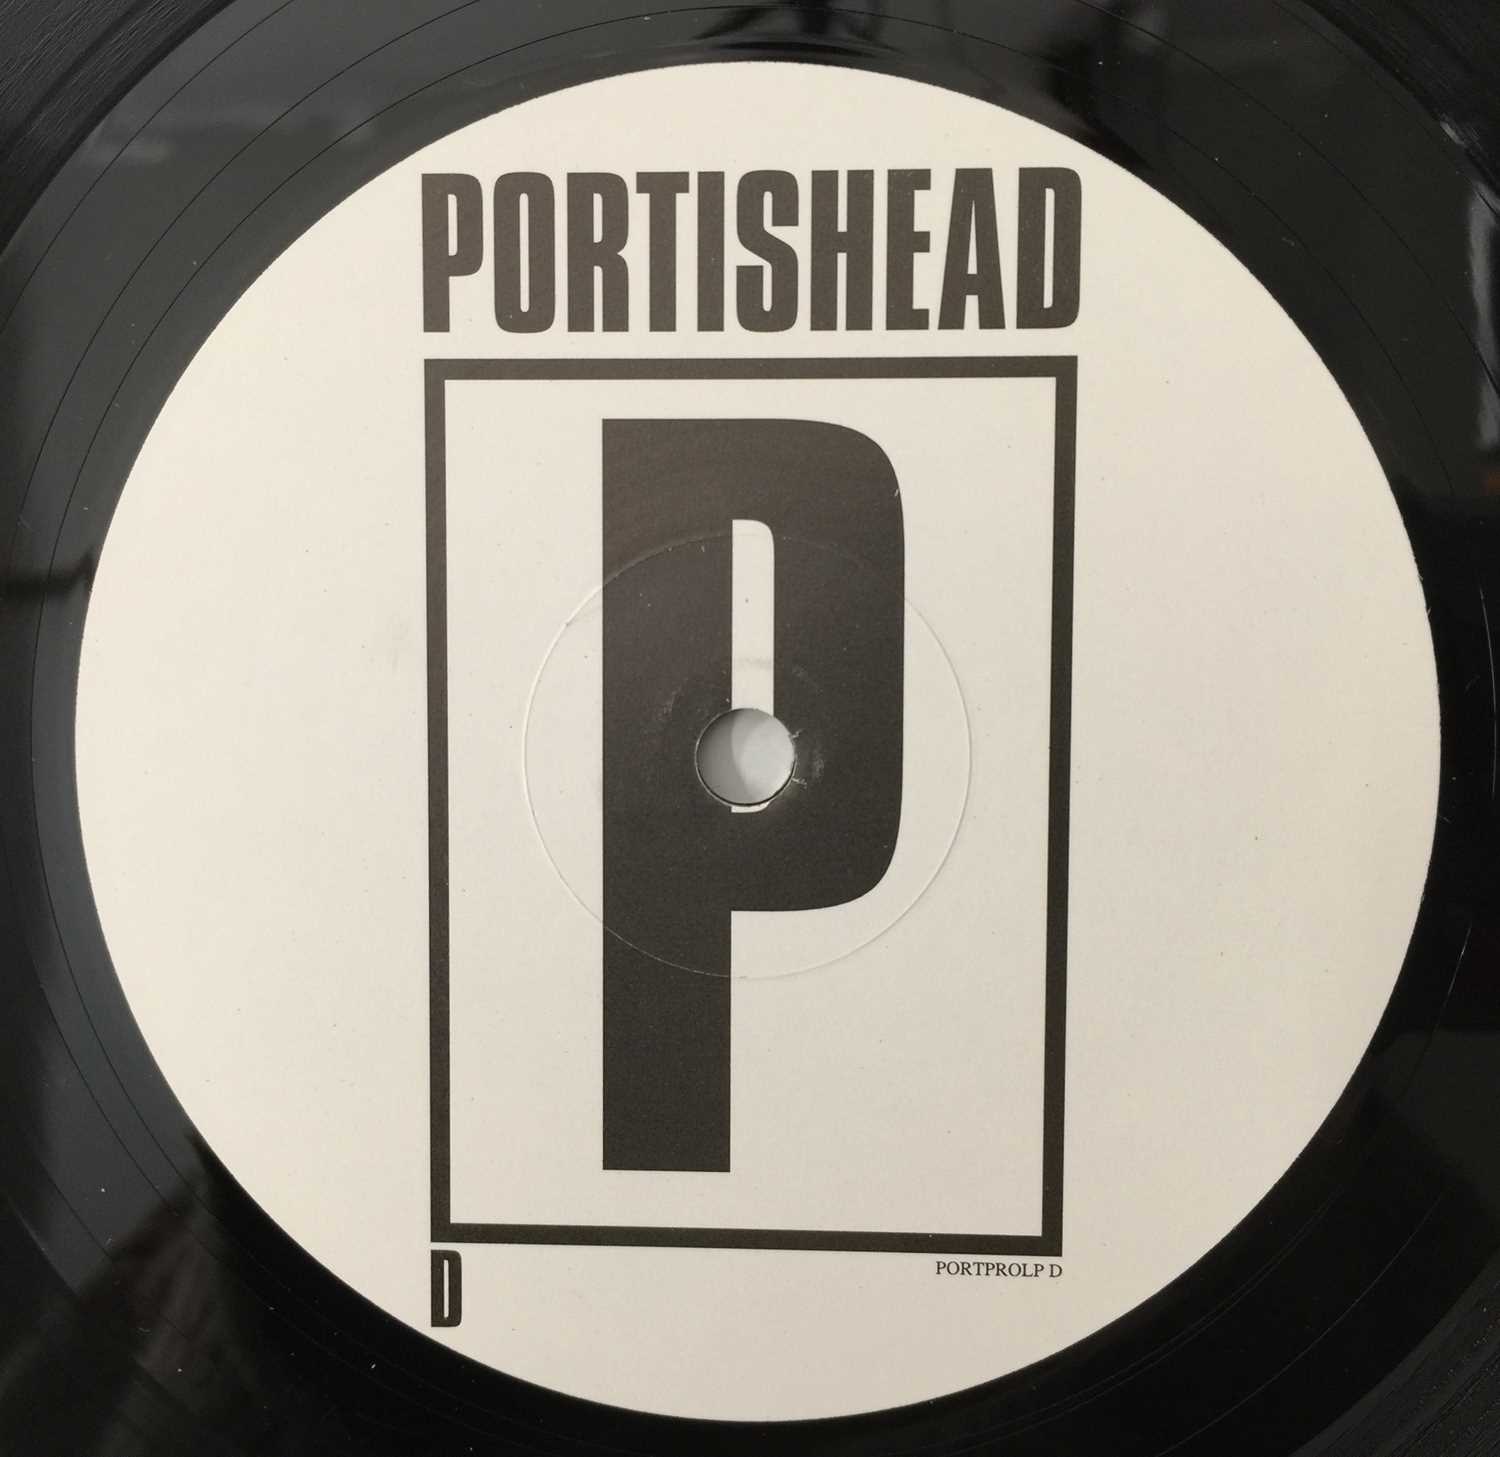 PORTISHEAD - PORTISHEAD (ORIGINAL 1997 PROMO 2 x 12" ALBUM - PORT LP PRO) - Image 5 of 7